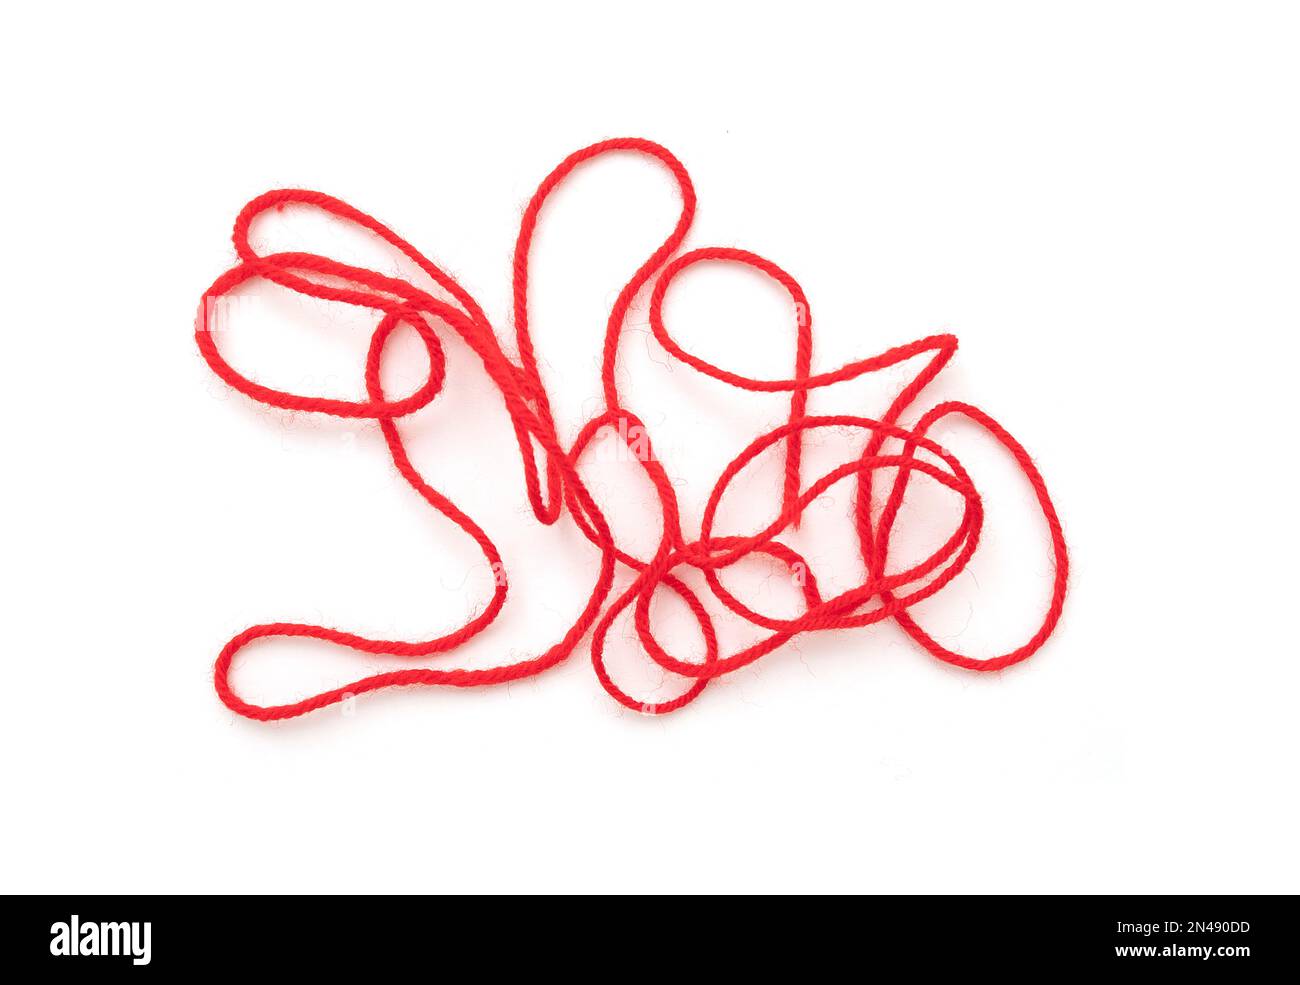 Langes, dünnes rotes Seil, Schnur isoliert auf weiß, Draufsicht Stockfoto